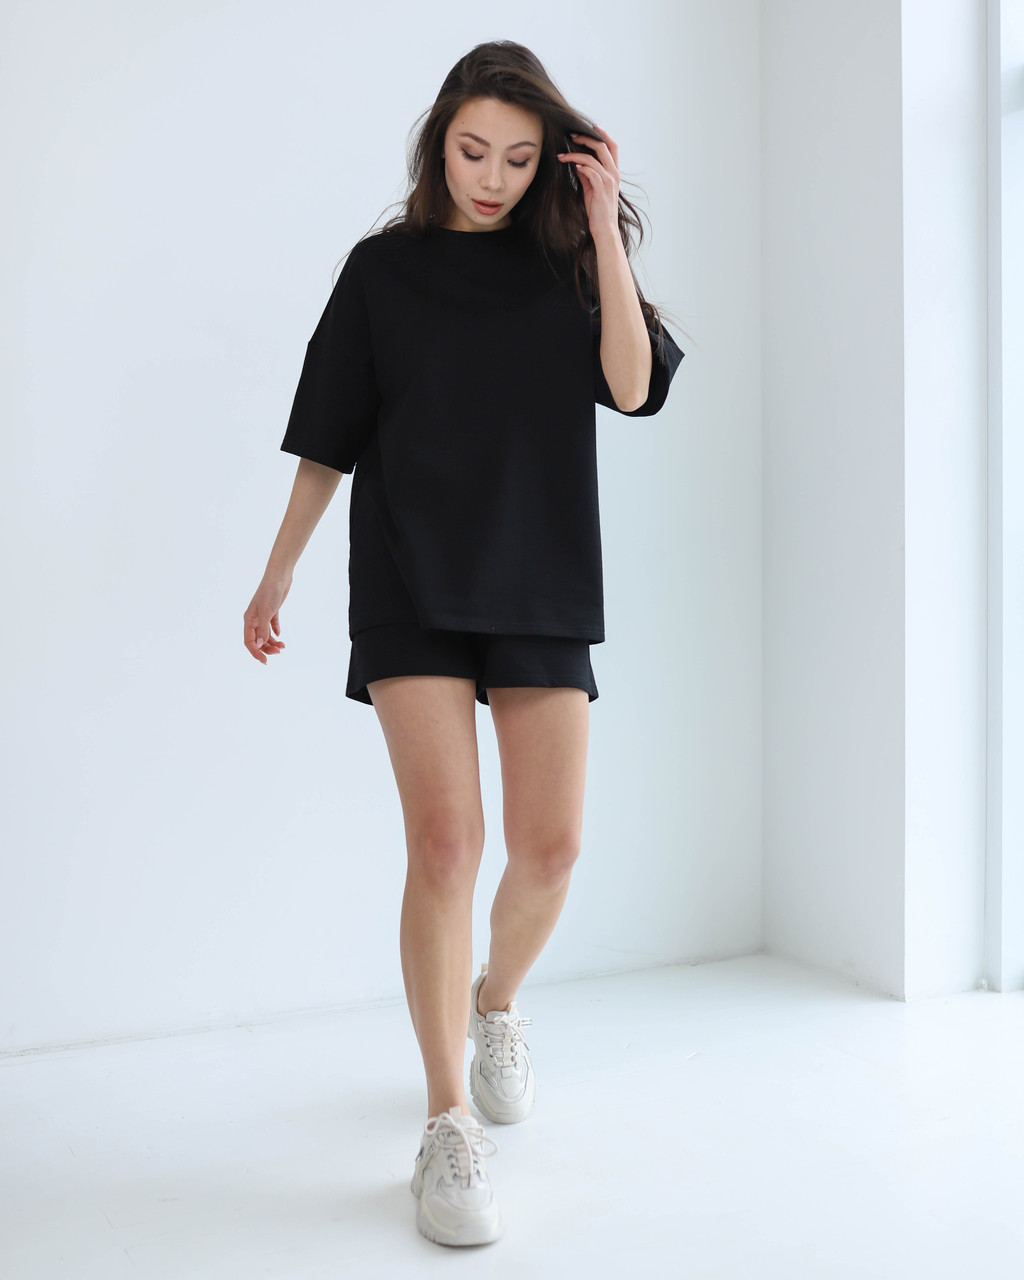 Літній комплект футболка і шорти жіночий чорний оверсайз модель Мія від бренду Тур, розміри: S, M, L TURWEAR - Фото 3